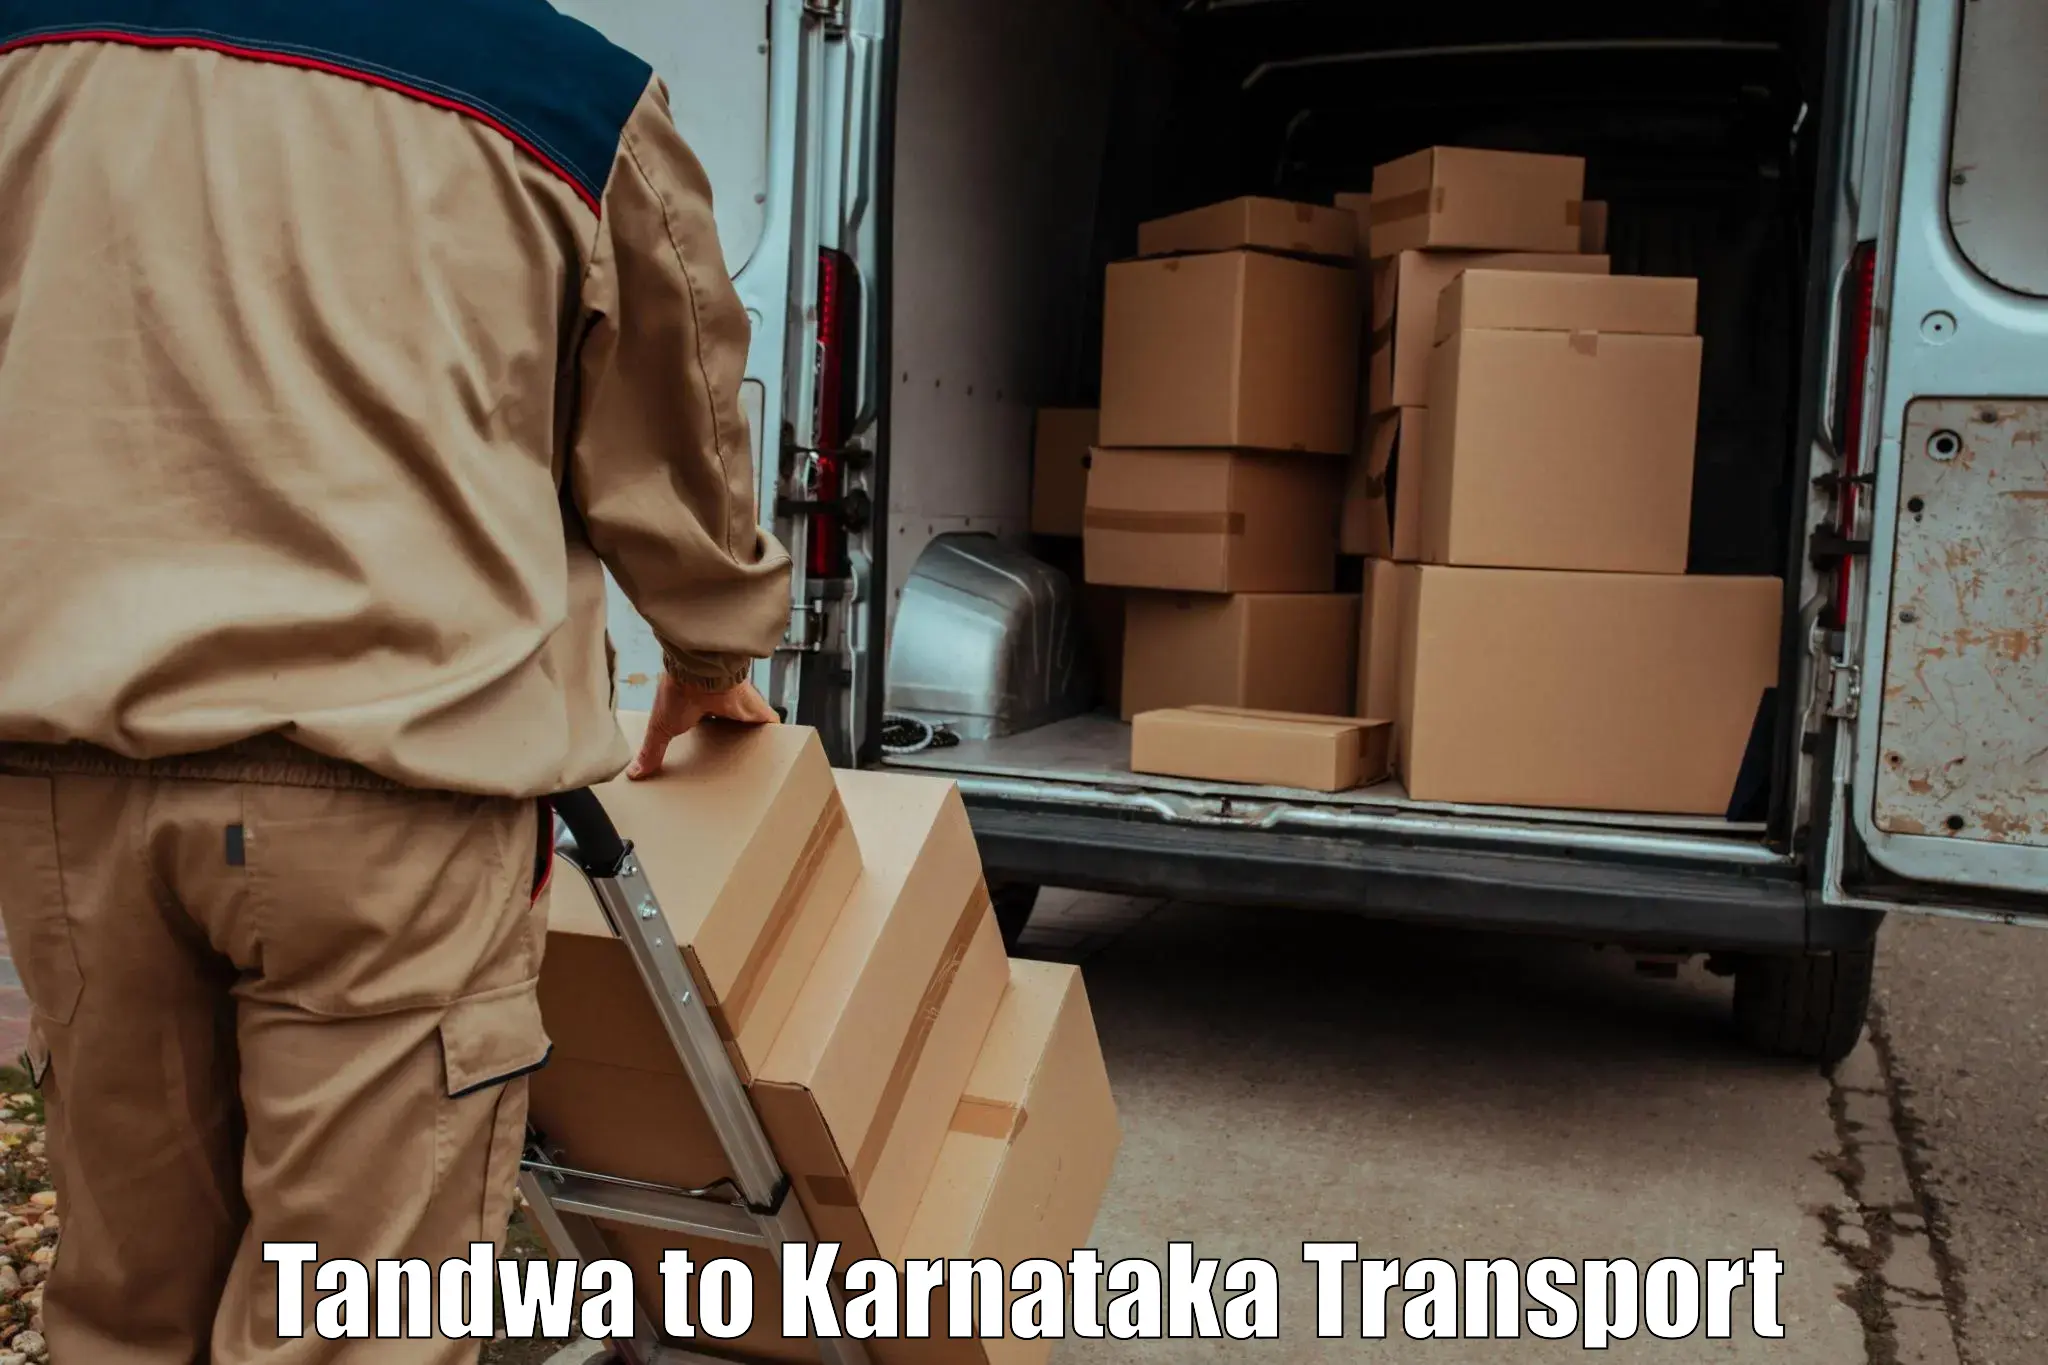 All India transport service in Tandwa to Kanjarakatte